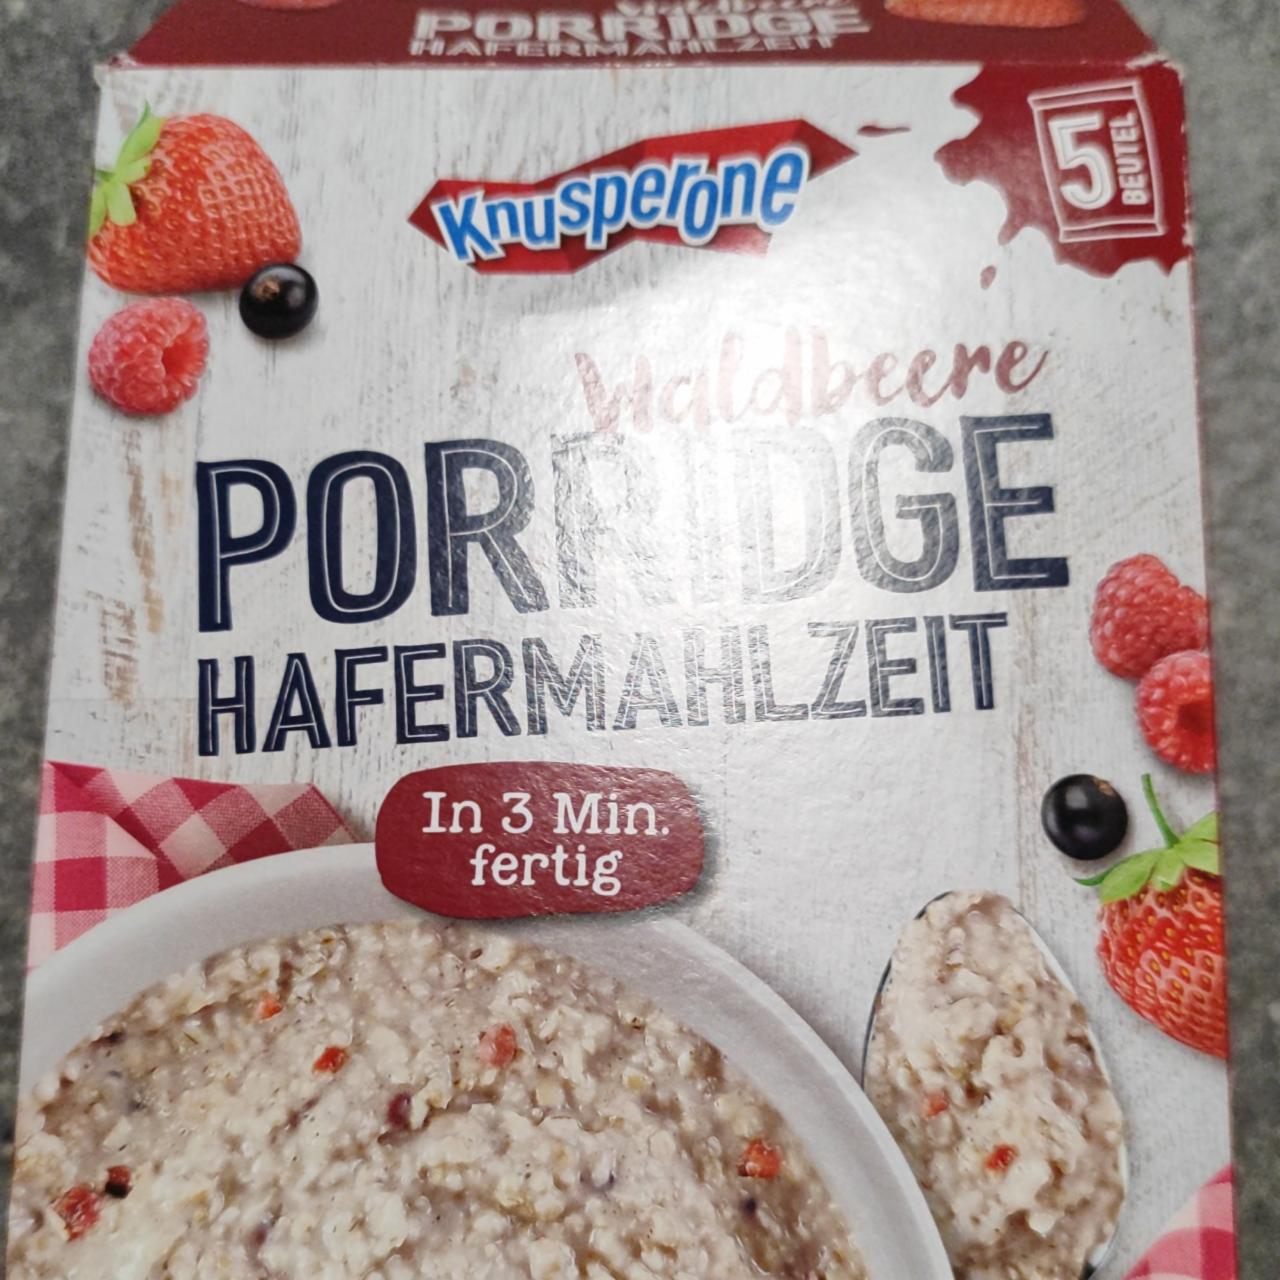 Fotografie - Porridge hafermahlzeit waldbeere Knusperone